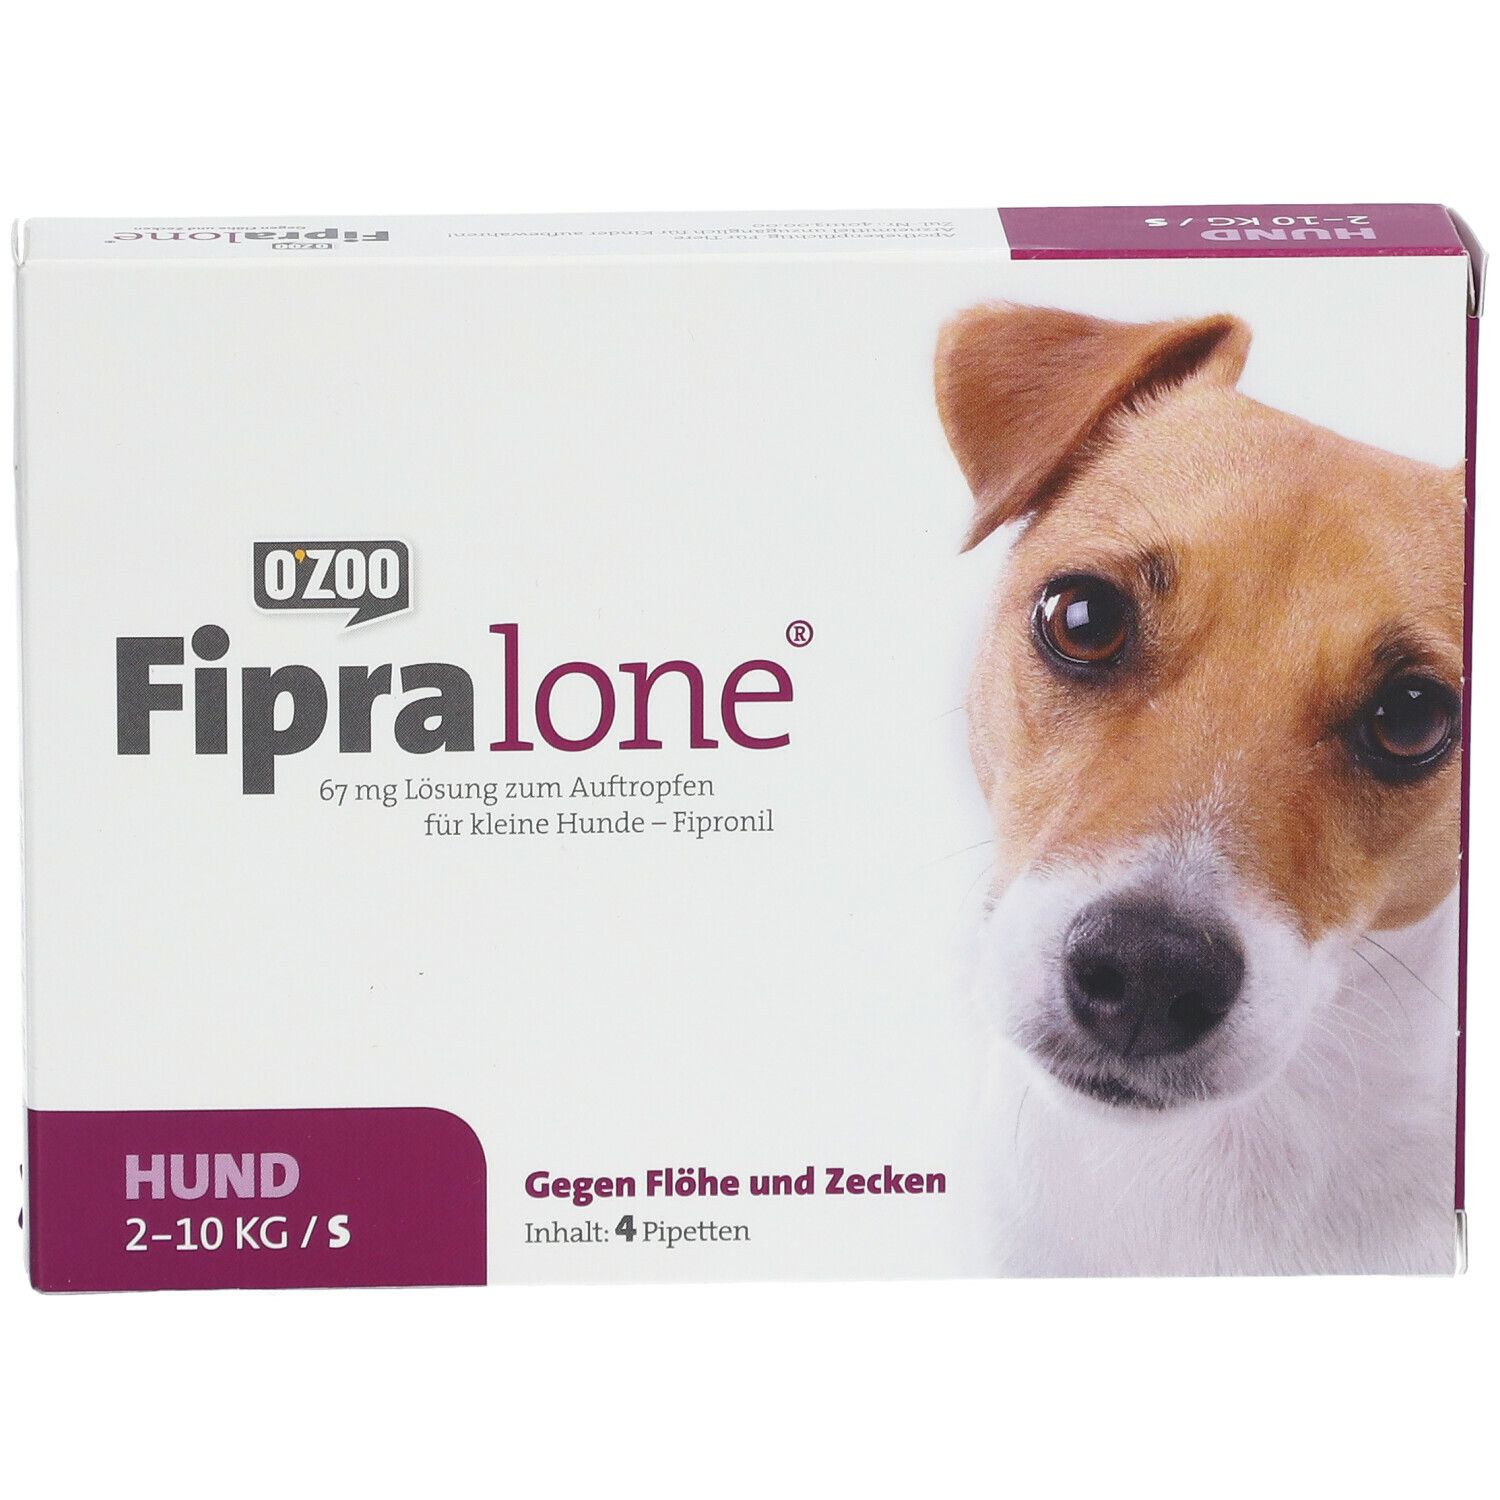 FIPRALONE® 67mg für kleine Hunde